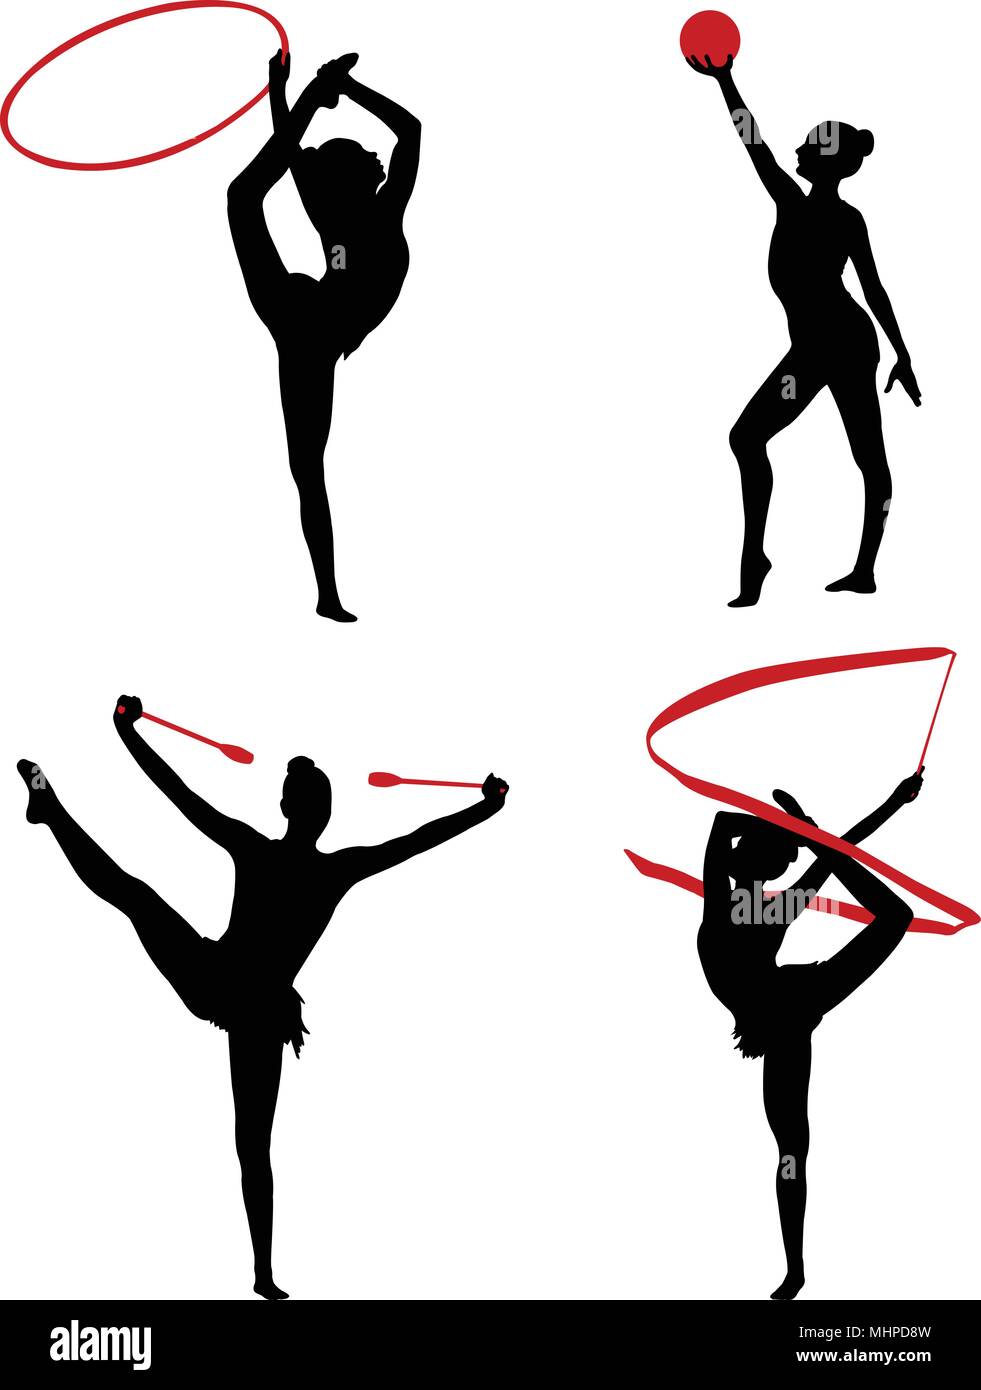 rhythmic gymnastics silhouettes - vector Stock Vector